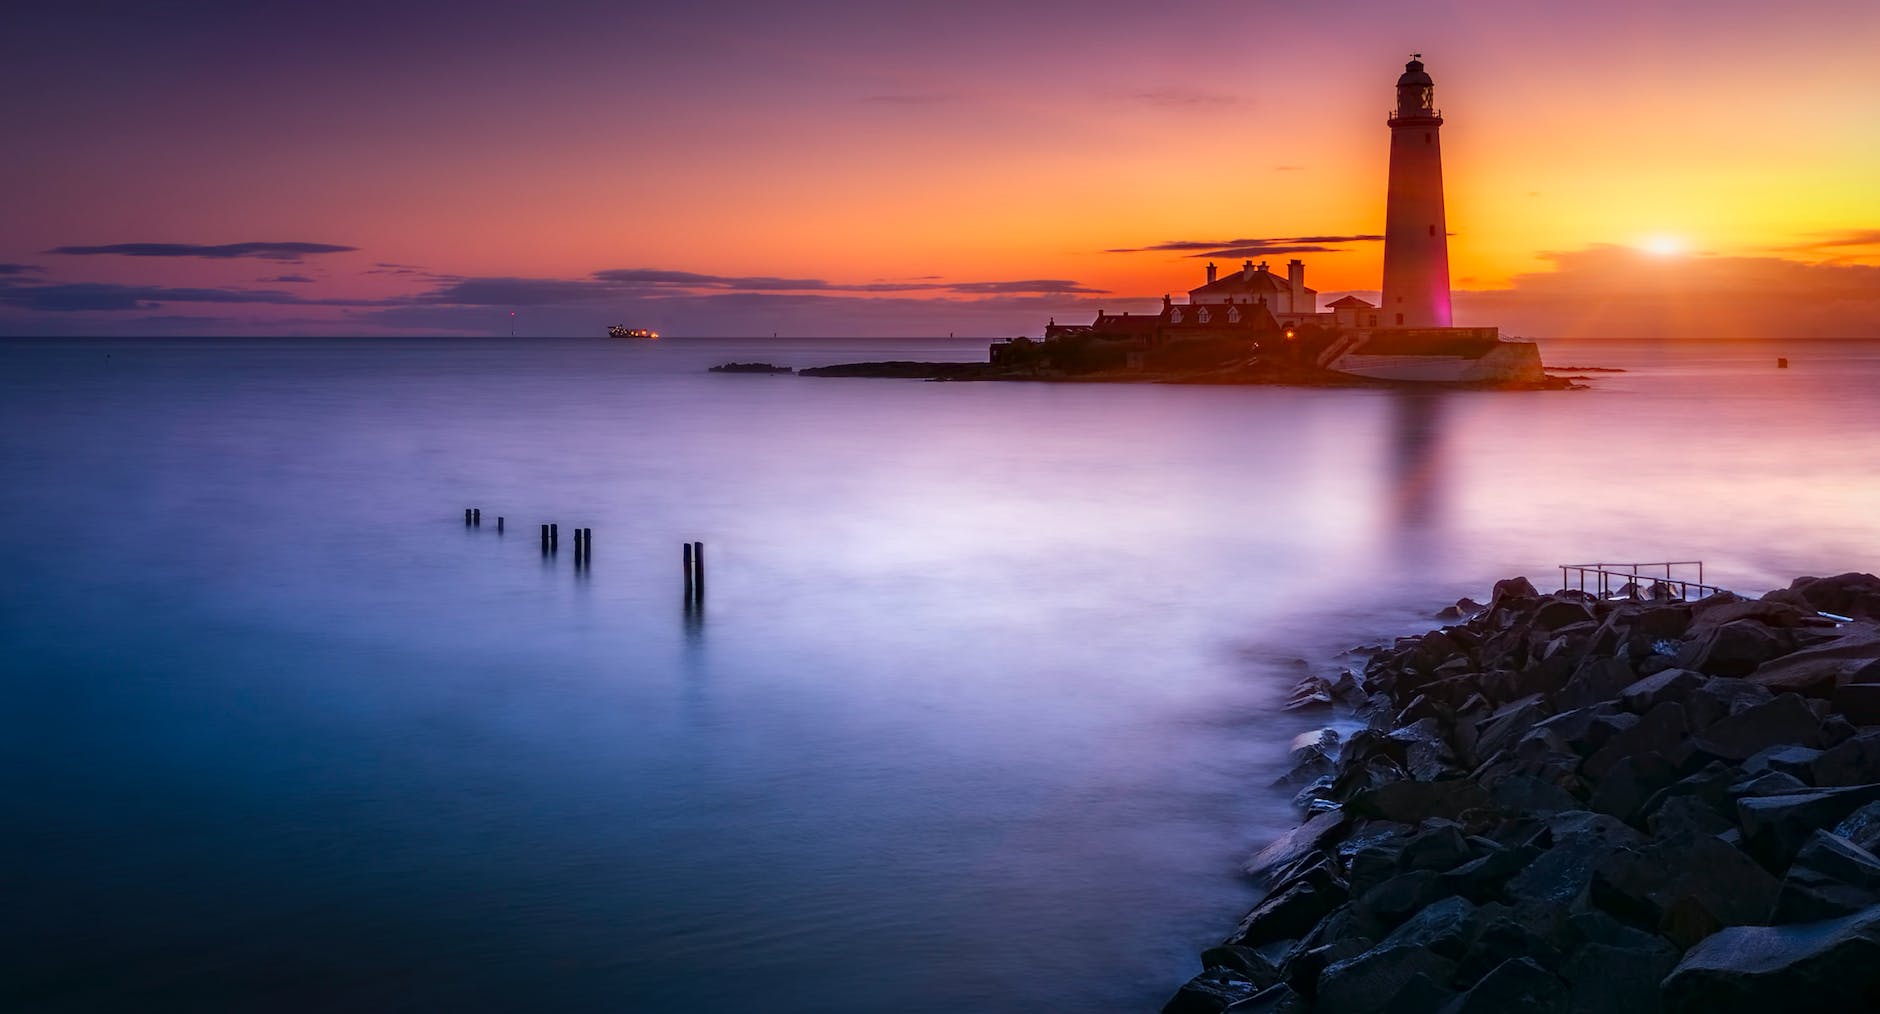 lighthouse on island under orange sunset